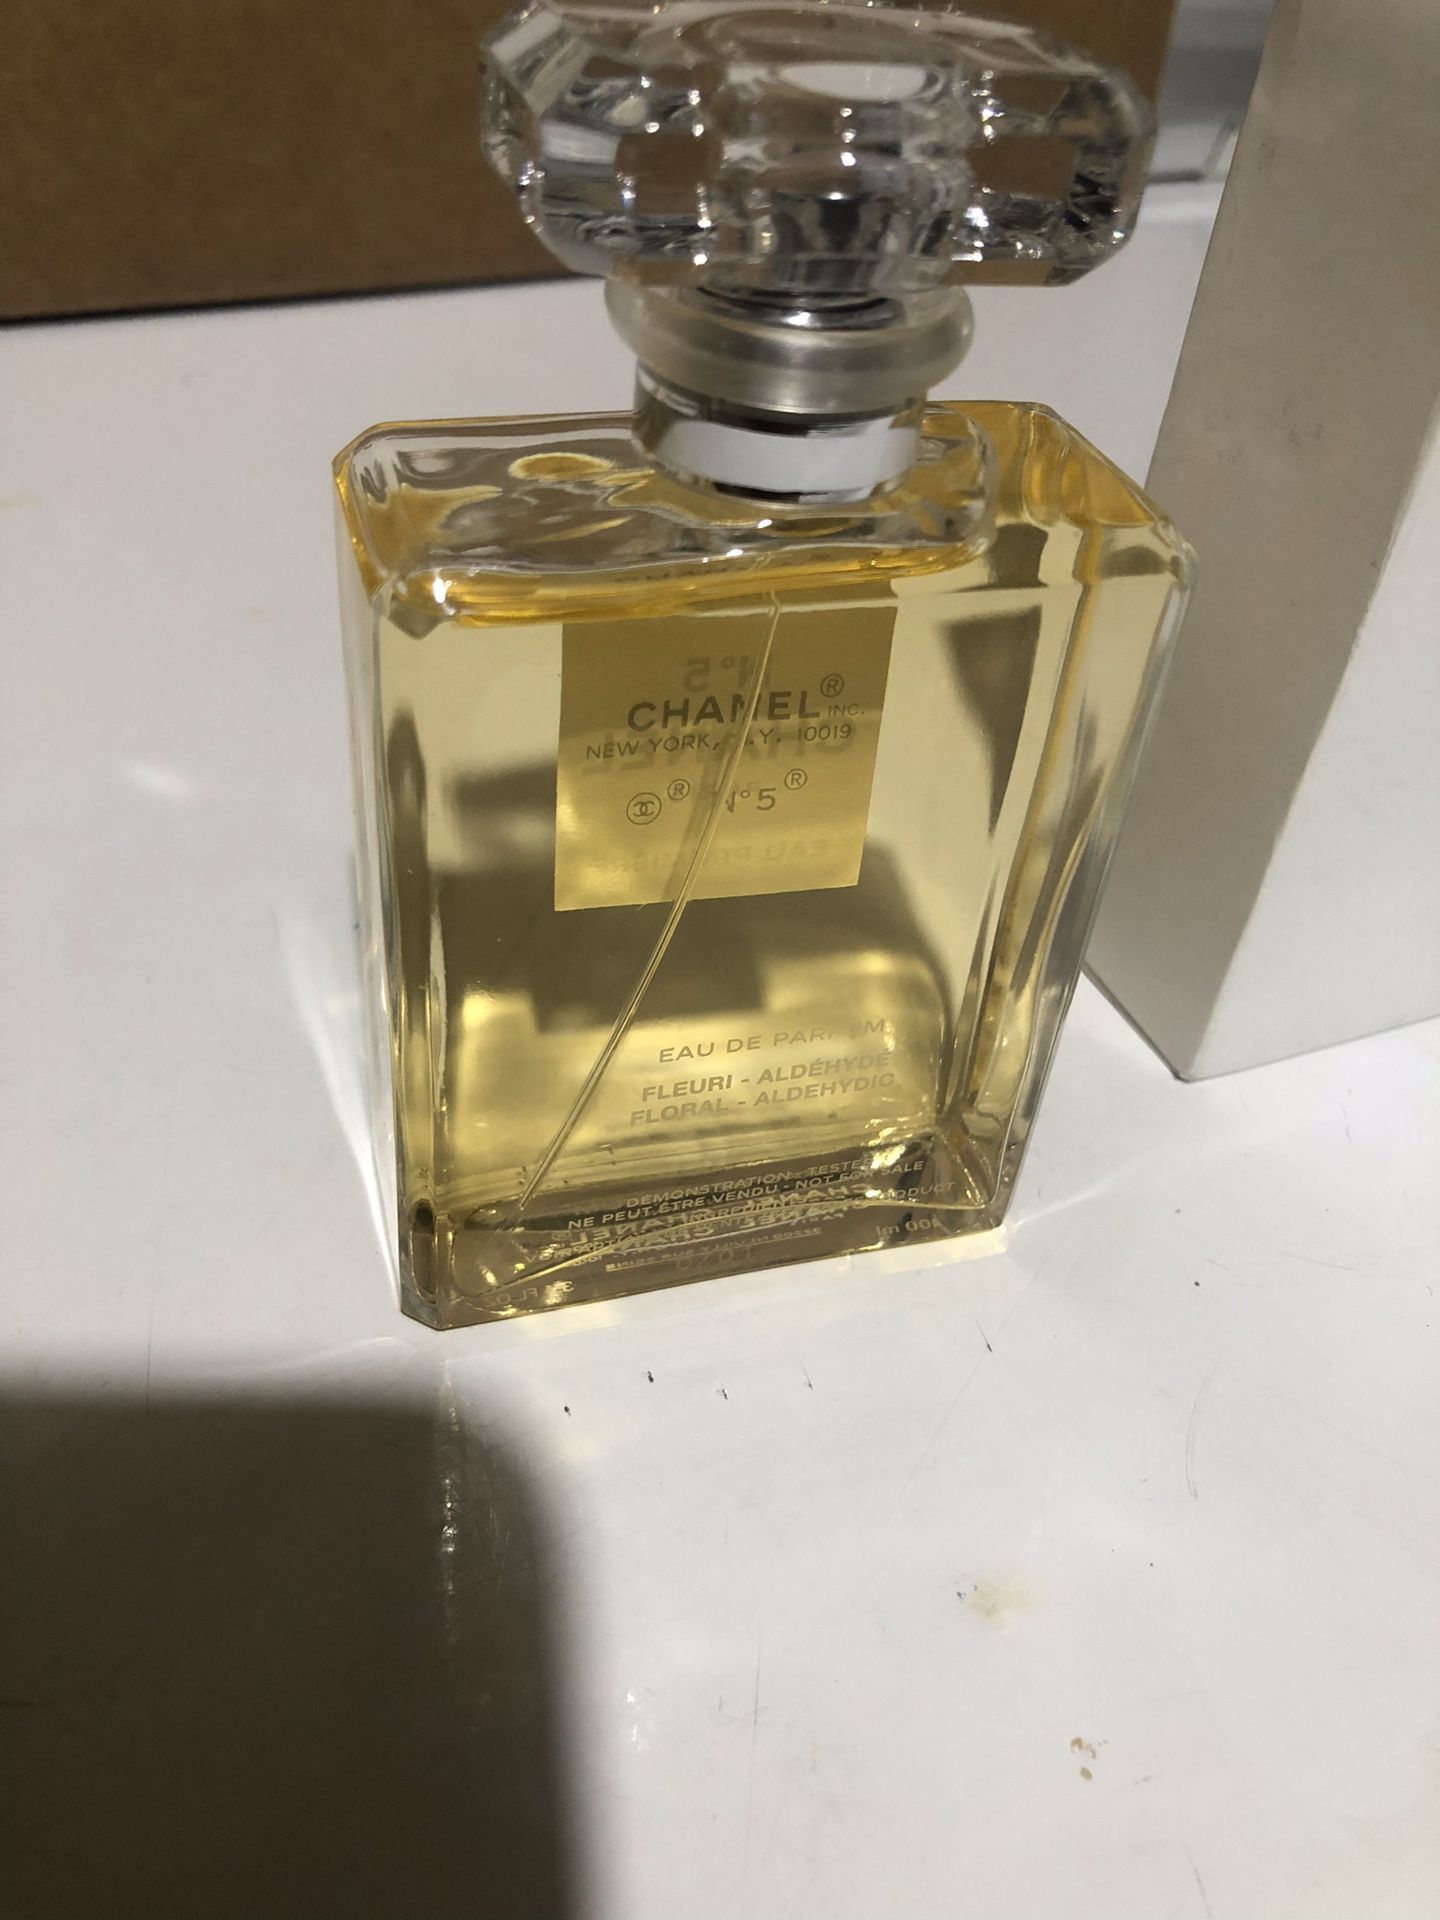 Oribe 2.5 oz. Côte d'Azur Eau de Parfum